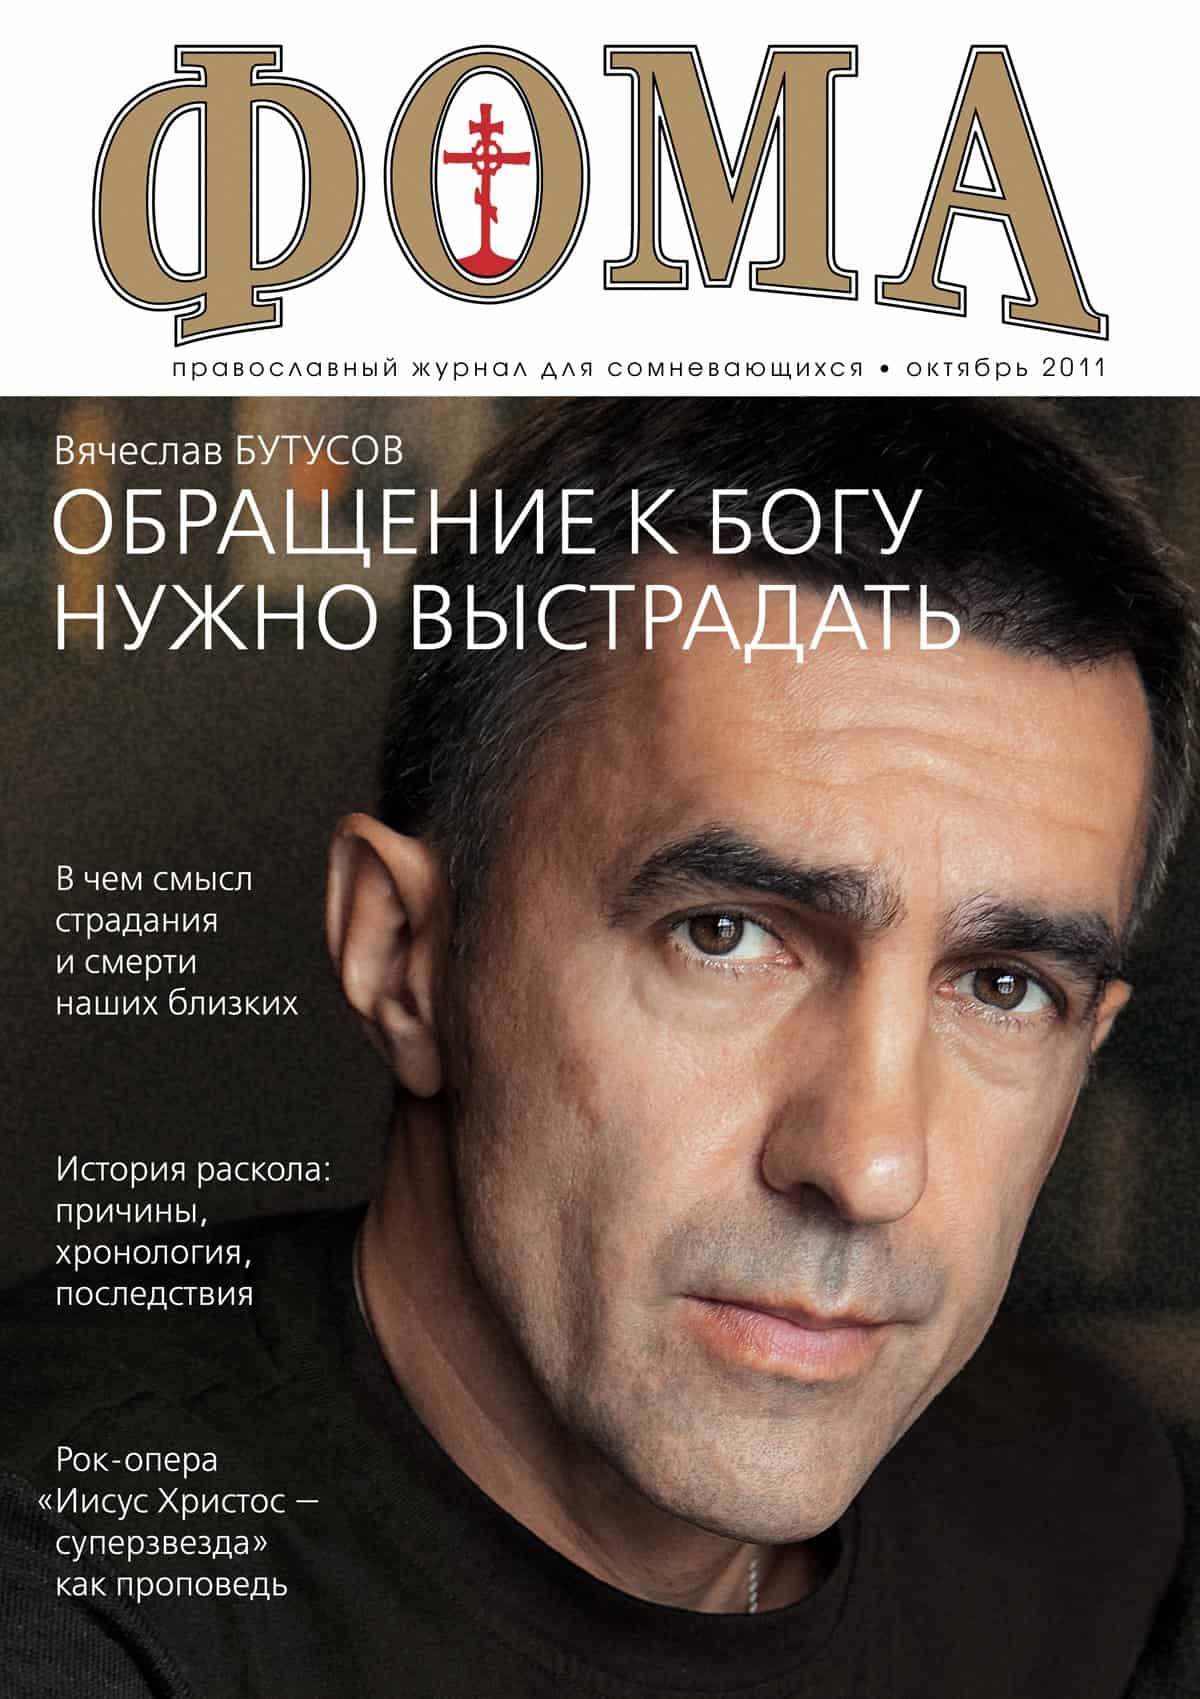 Сайт православного журнала